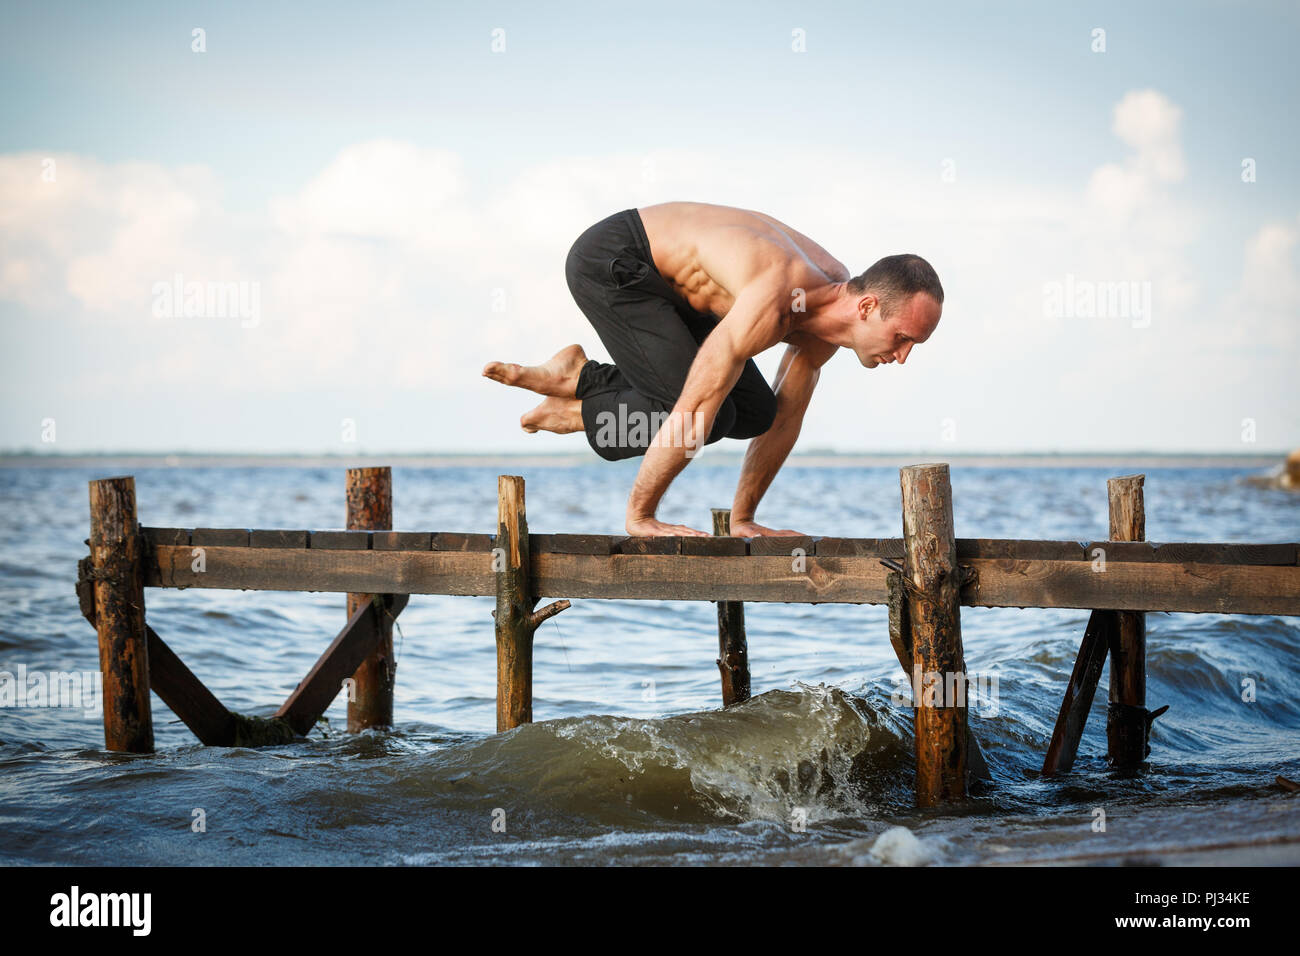 Junge yoga Trainer üben lolasana Pose auf einer hölzernen Pier an einem See oder Fluss Ufer. Gesunder Lebensstil Konzept Stockfoto